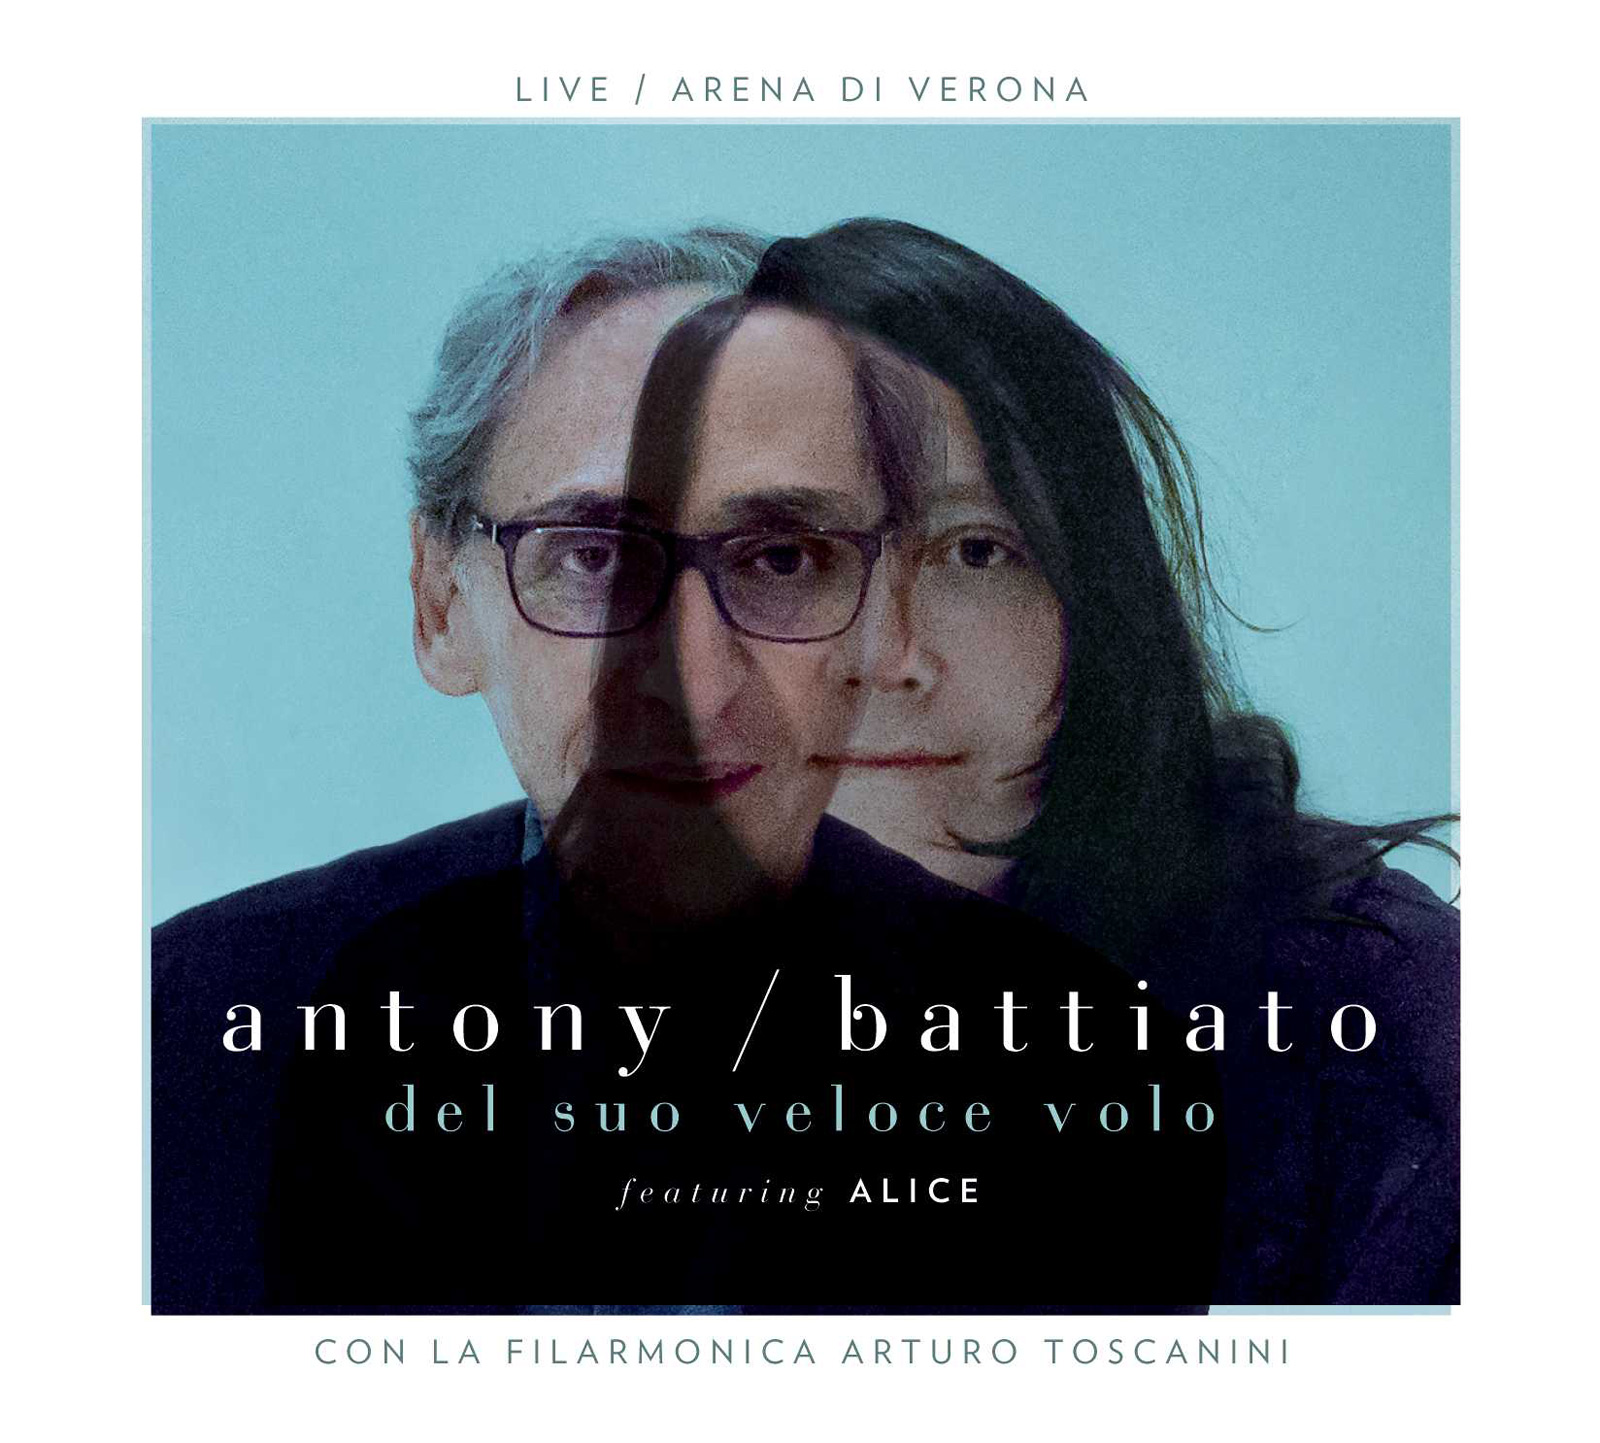 Esce oggi  "DEL SUO VELOCE VOLO" di  FRANCO BATTIATO e ANTONY and THE JOHNSONS